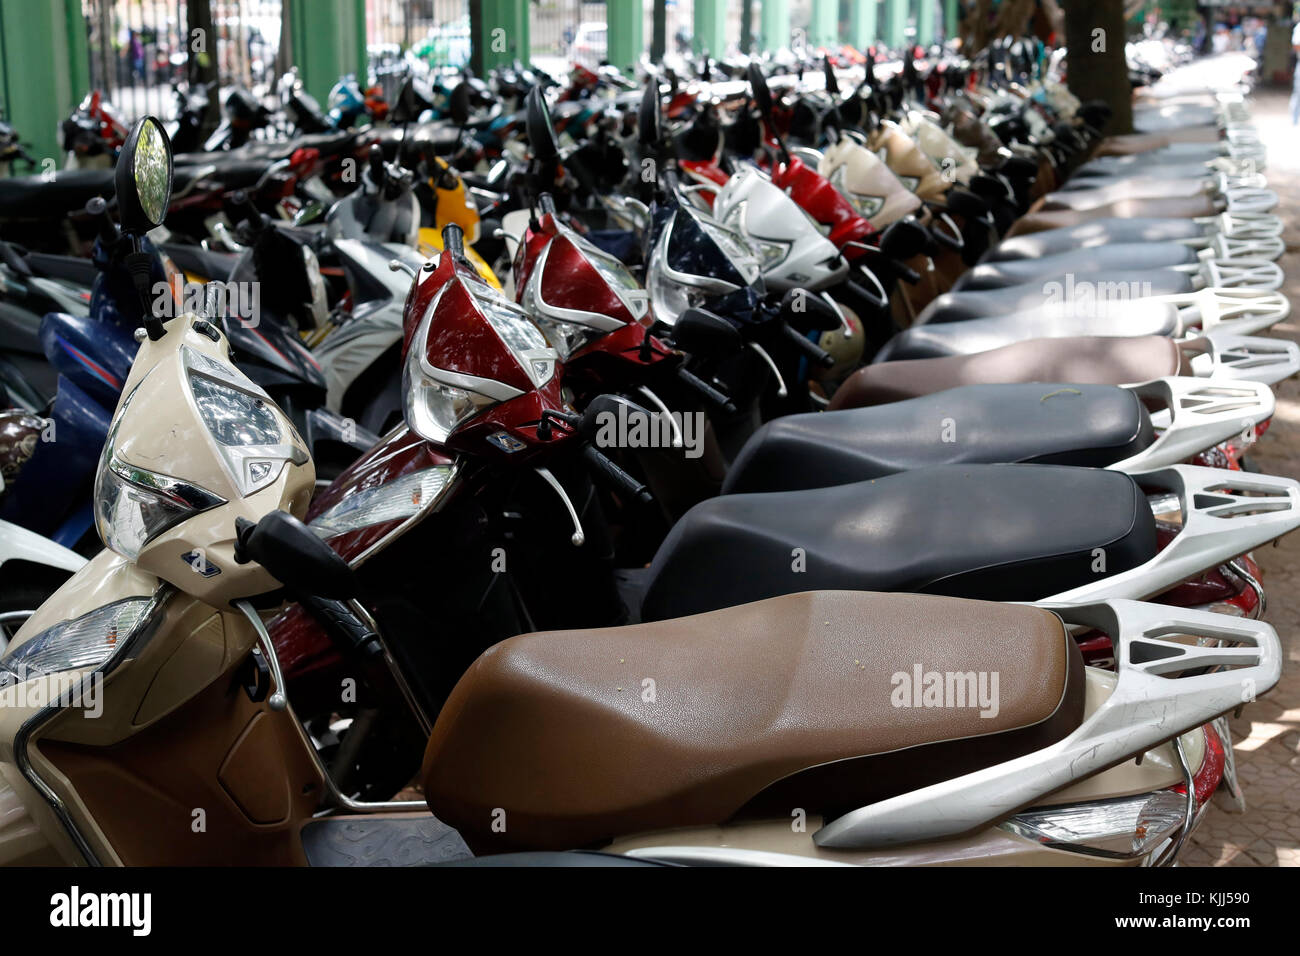 Les scooters et motos dans un parking. Ho Chi Minh Ville. Le Vietnam. Banque D'Images